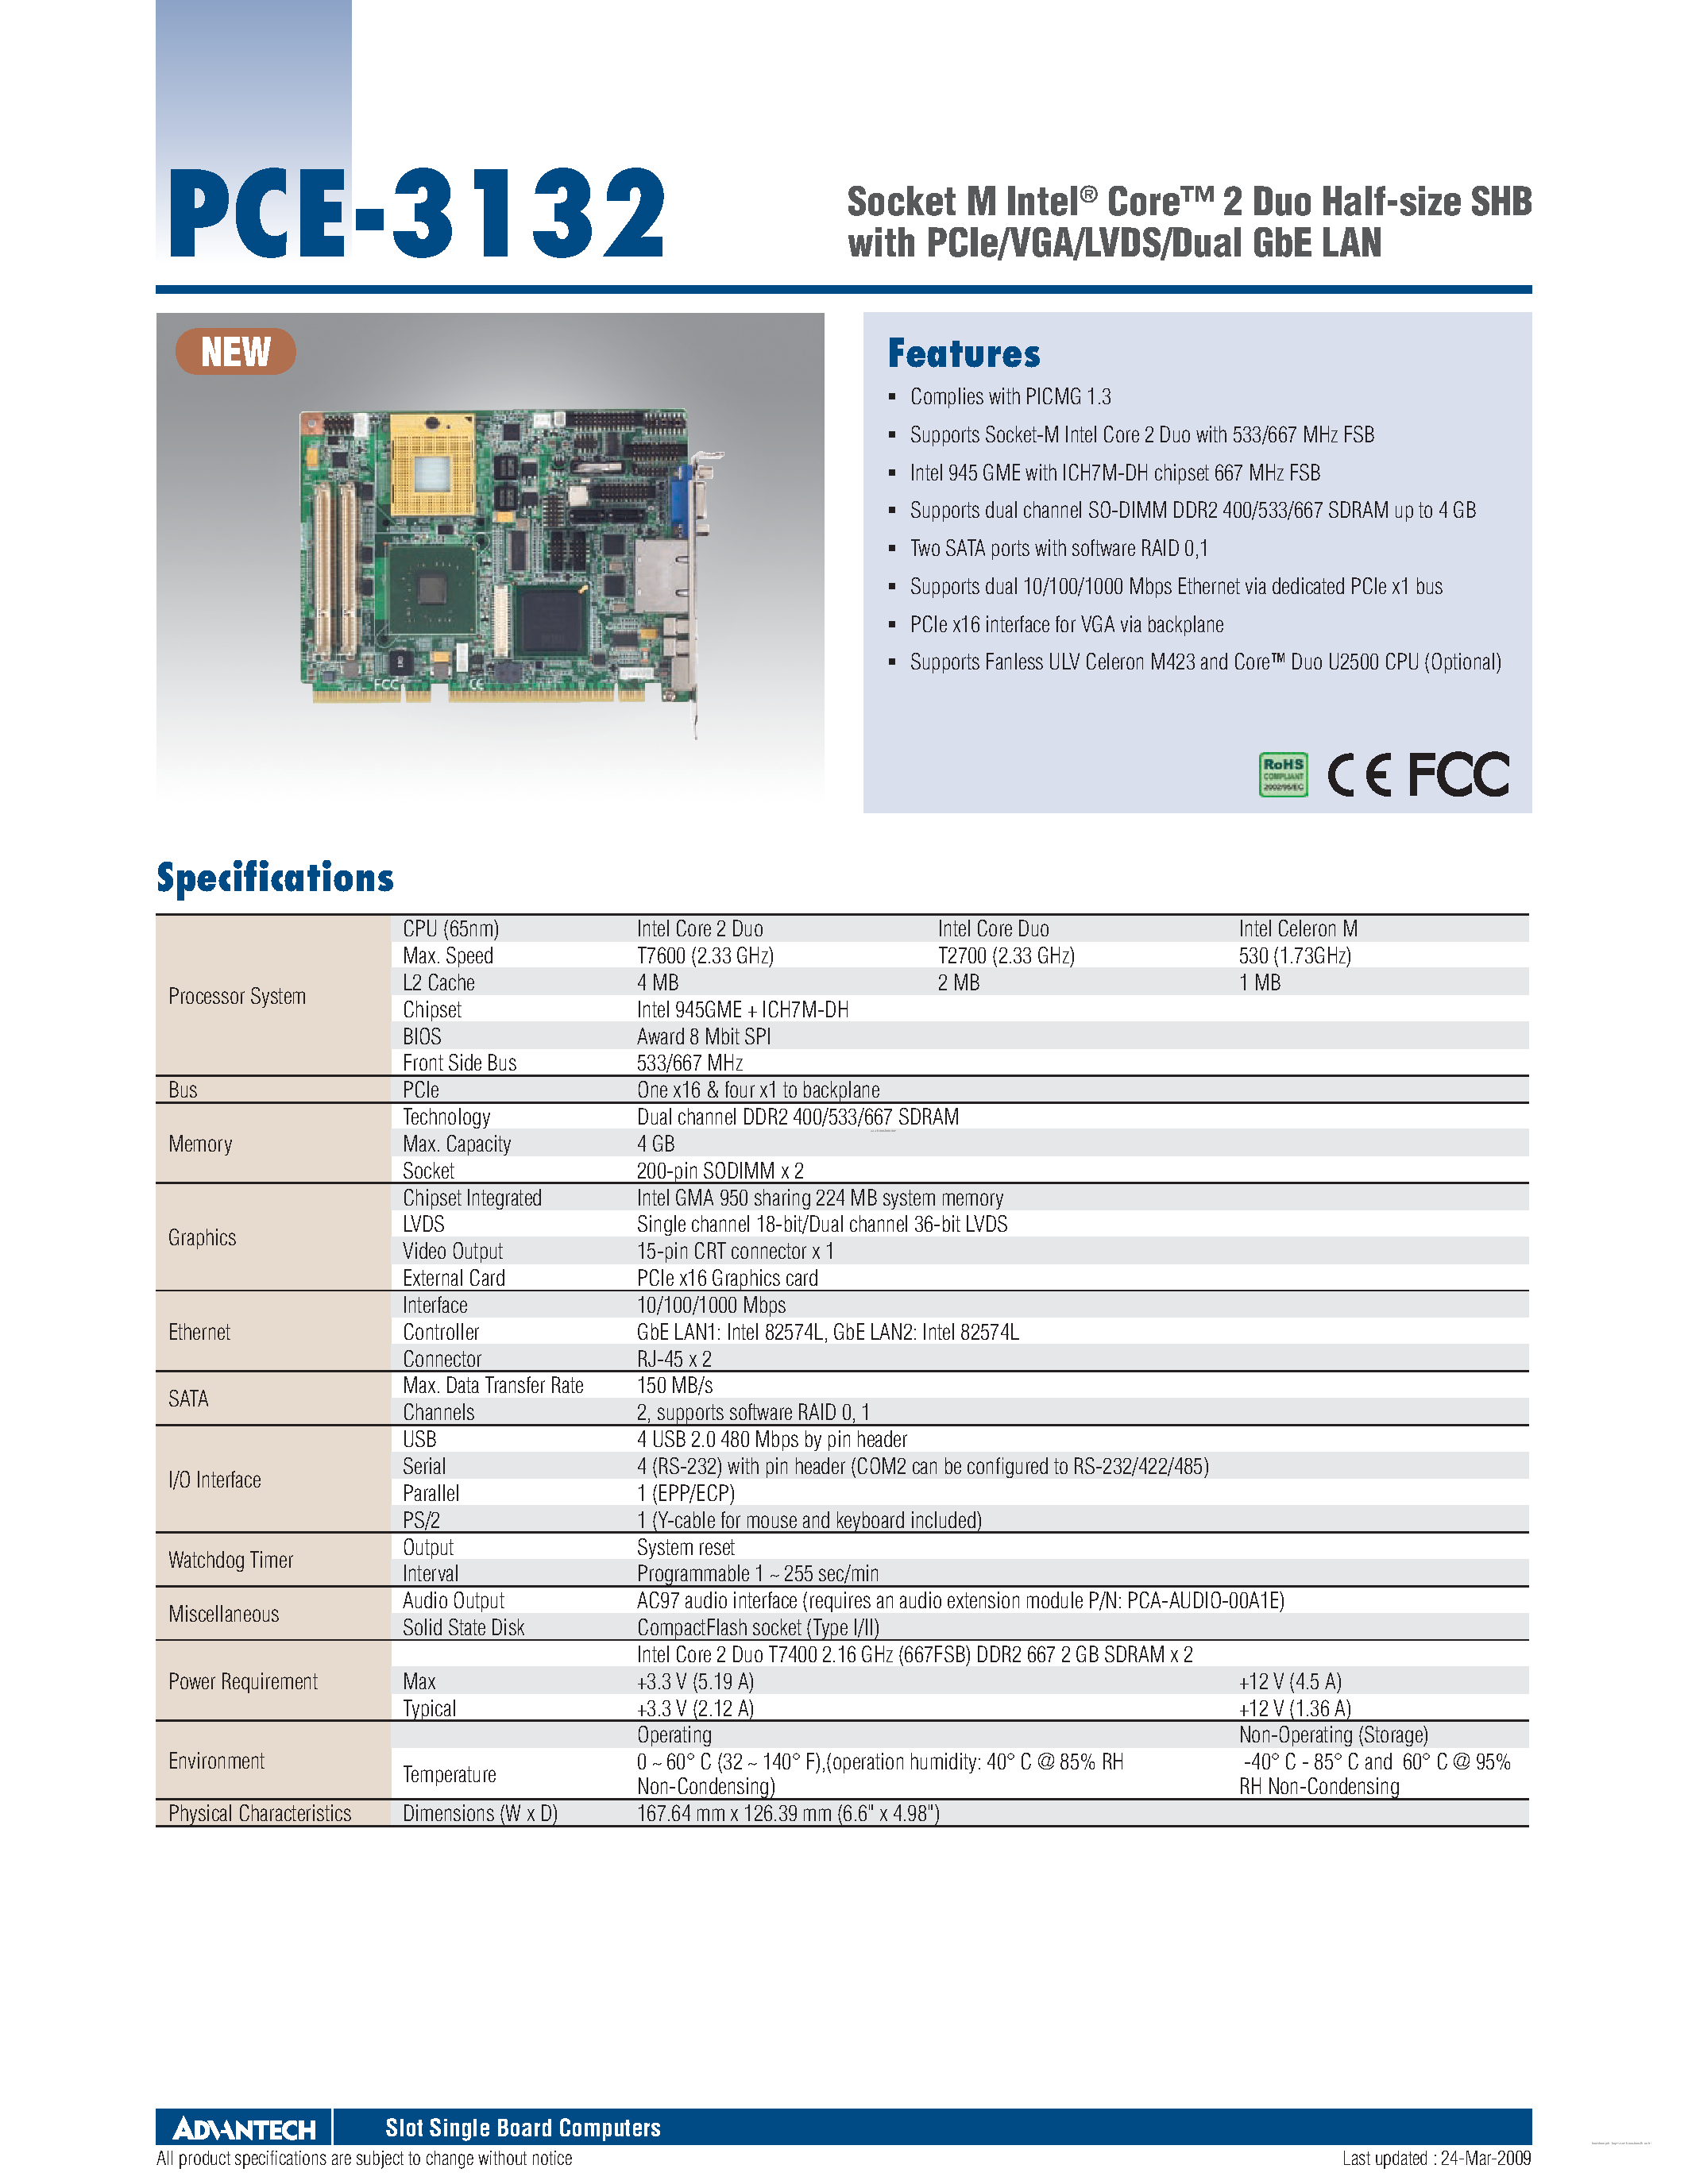 Datasheet PCE-3132 - Socket M Intel Core page 1